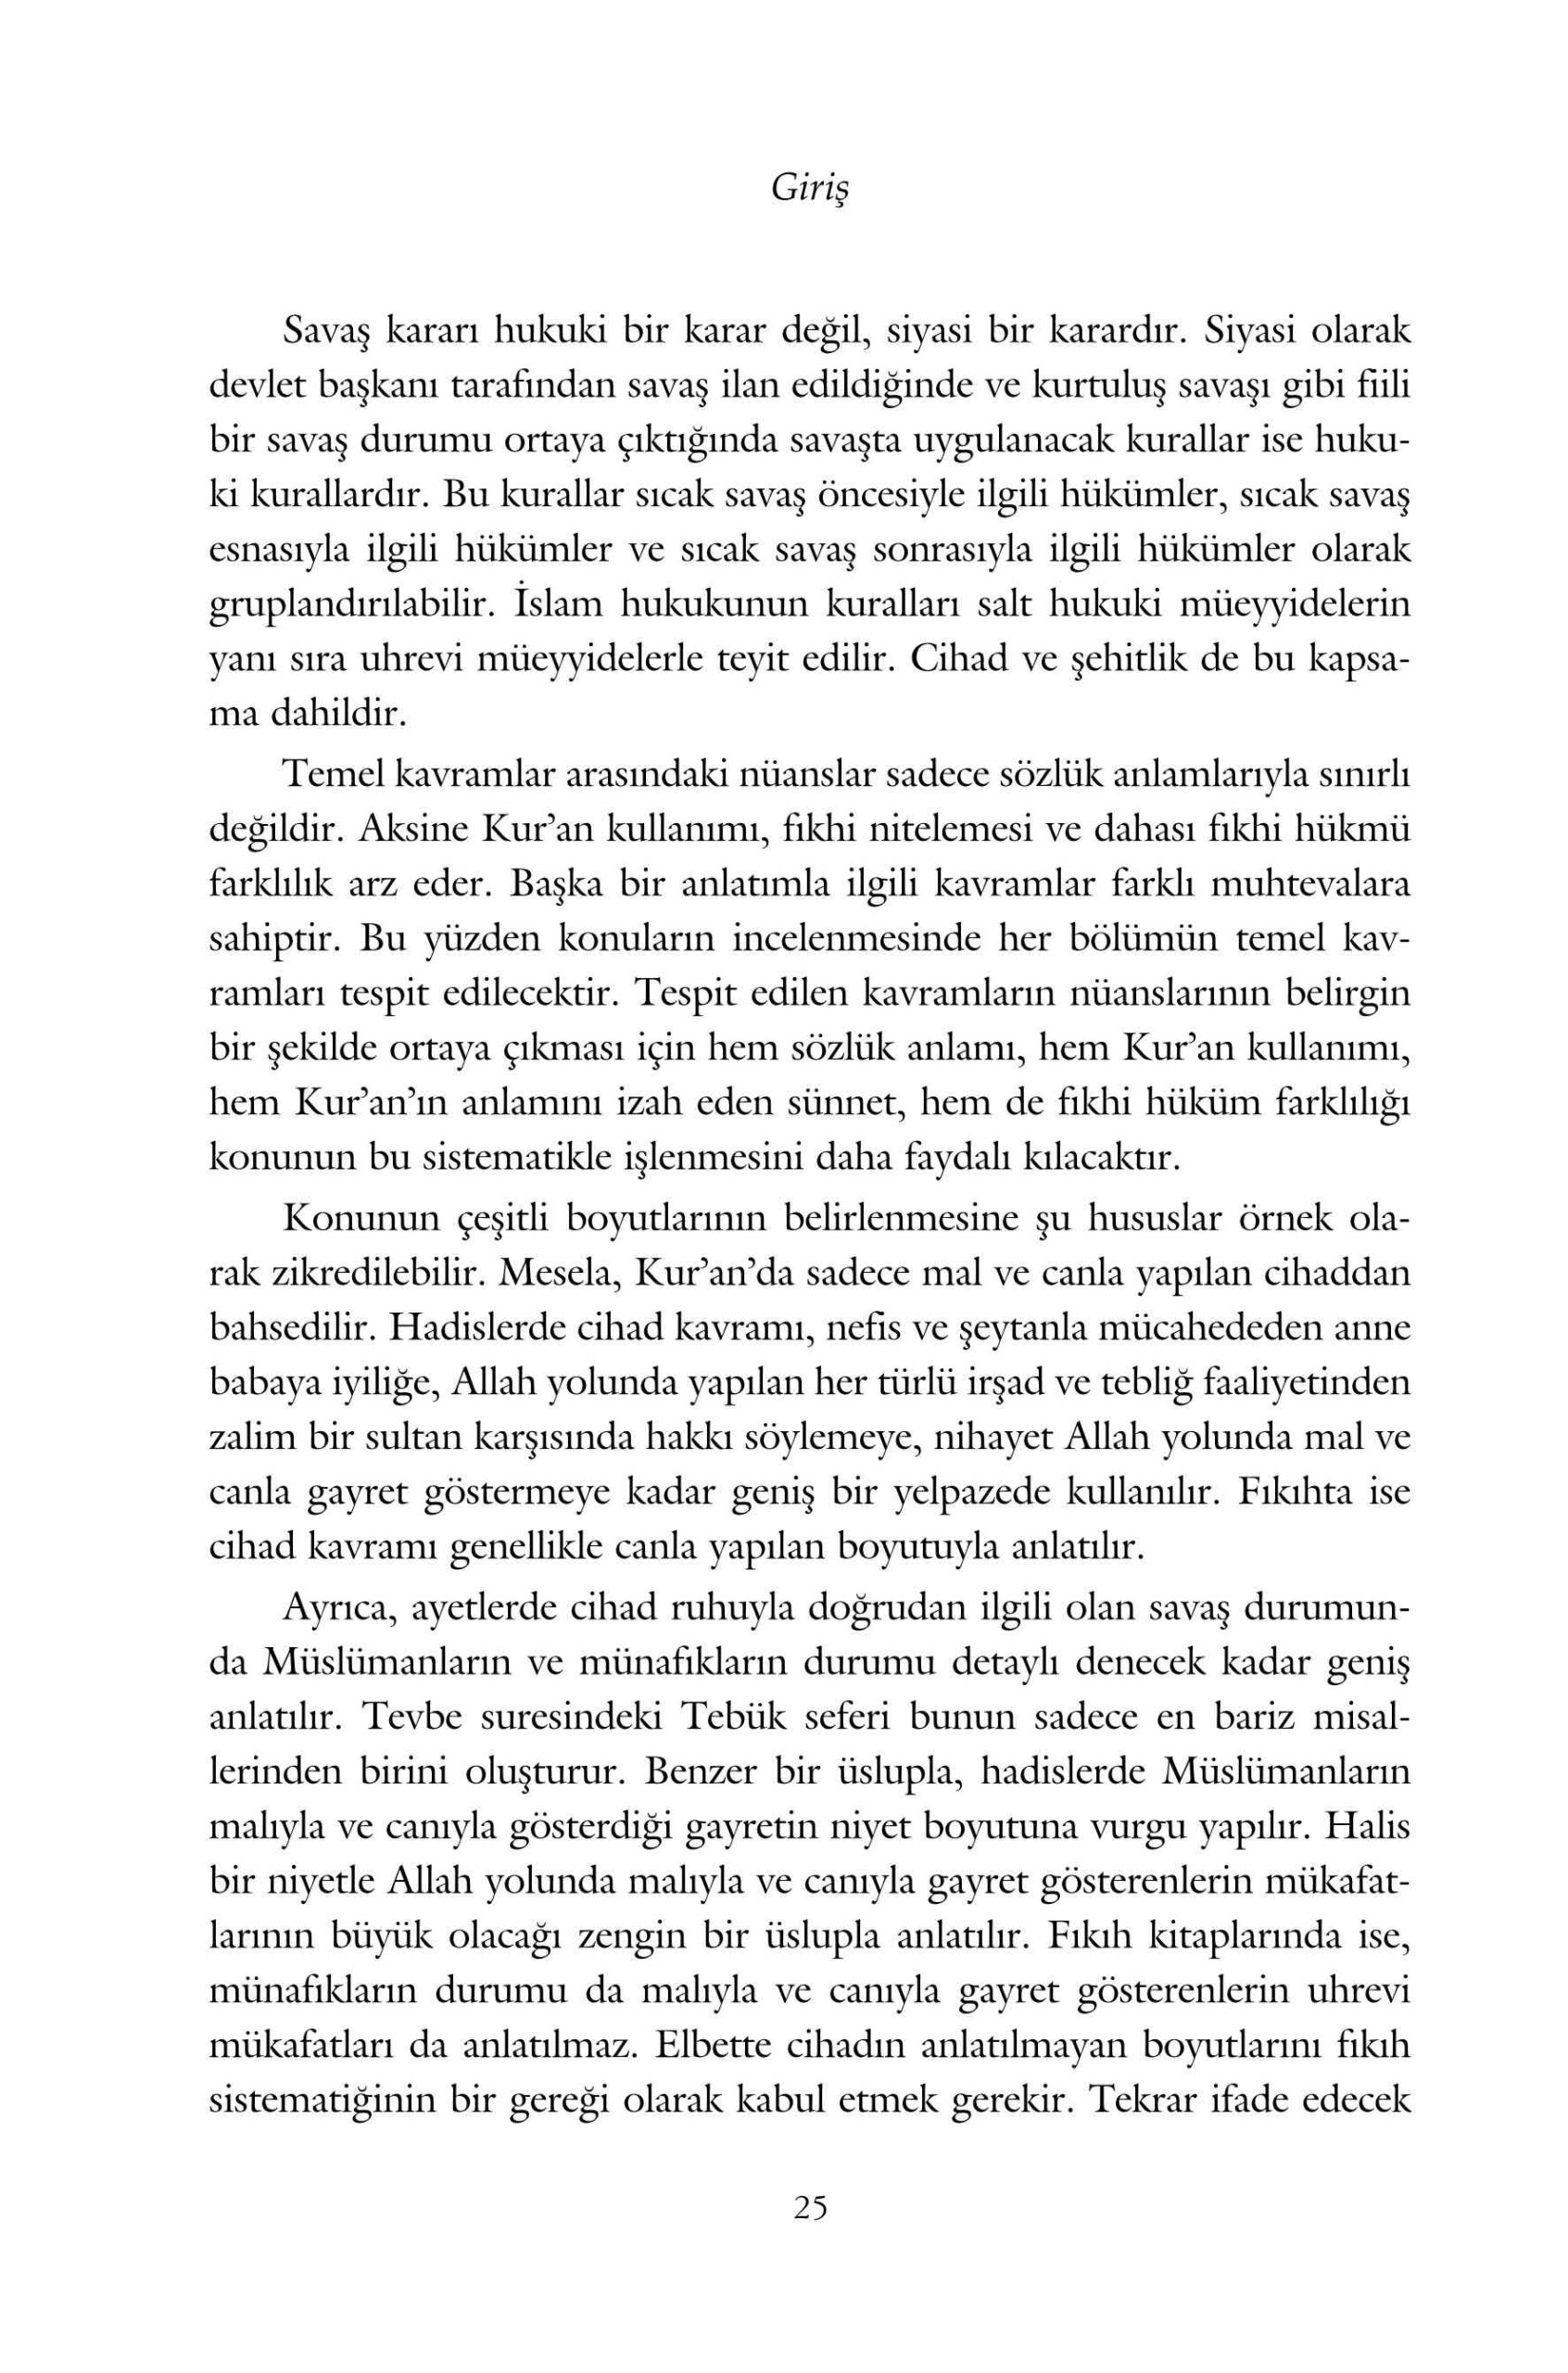 Ahmet Gunes - Islam Devletler Hukuku Acisindan Savas ve Cihad - IsikAkademiY.pdf, 168-Sayfa 